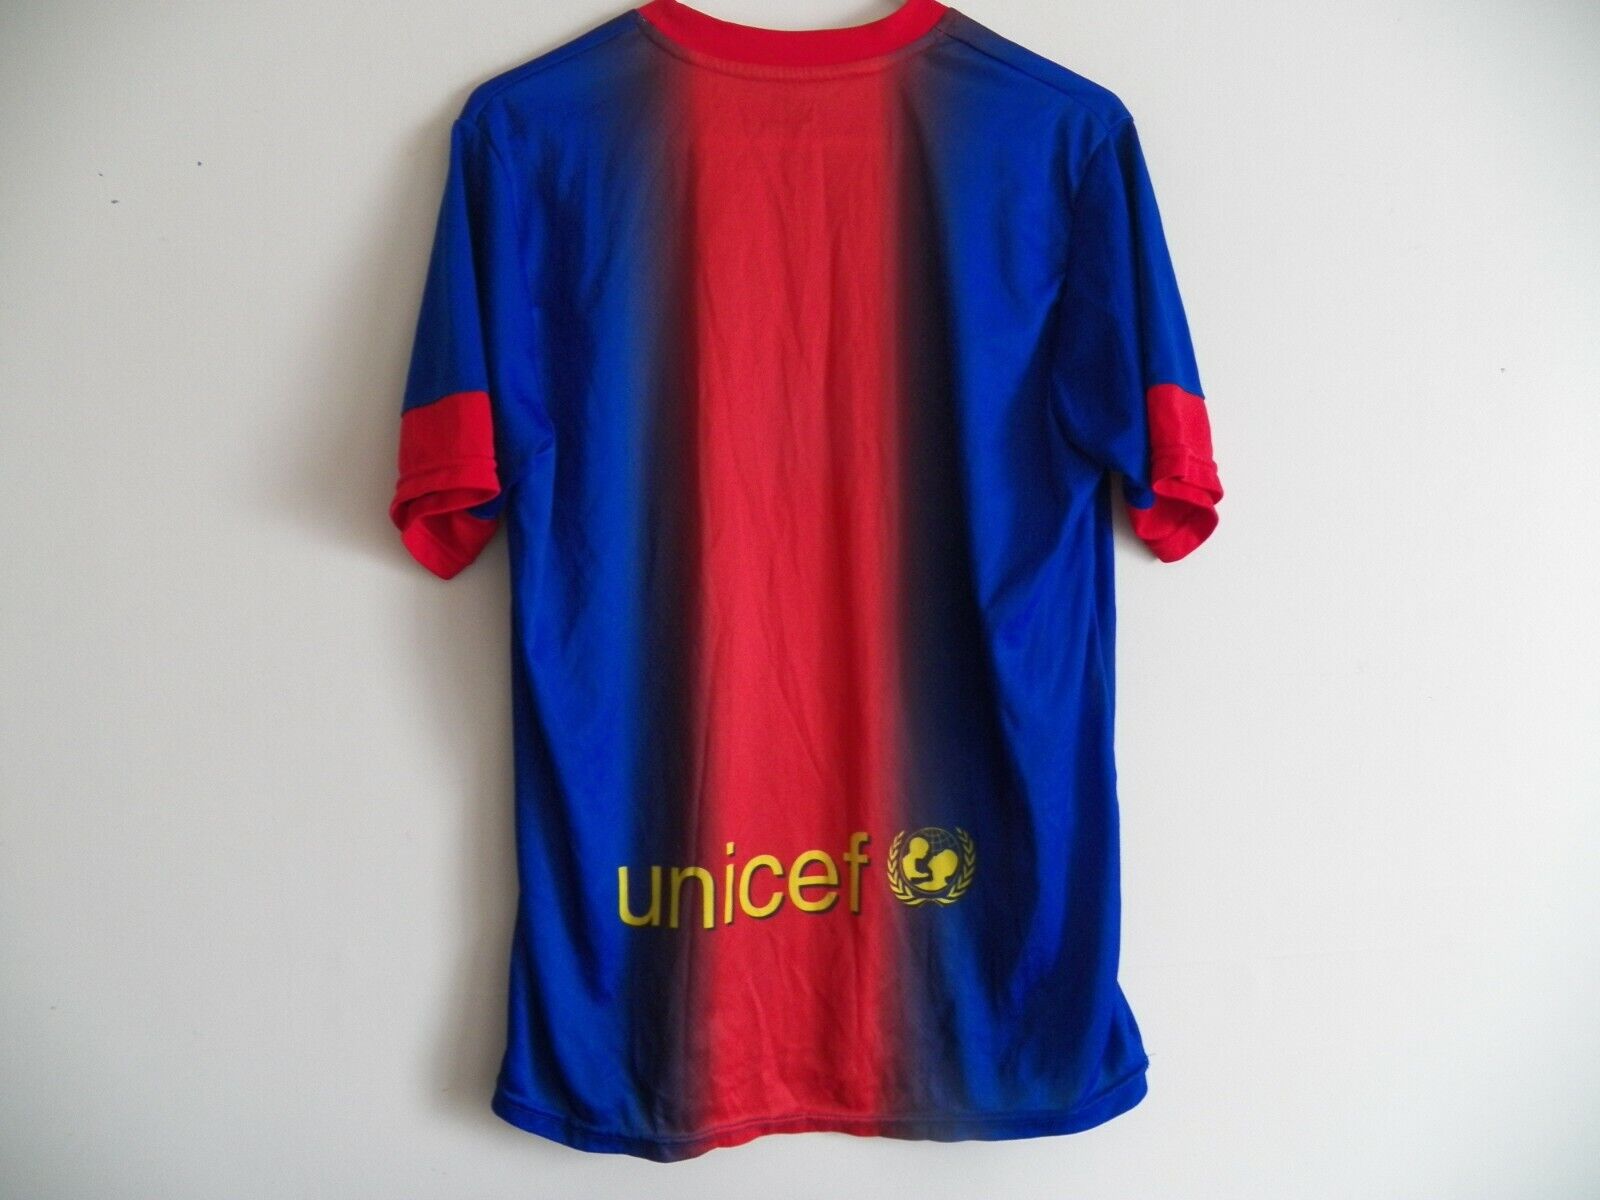 FCB FC Barcelona Rhinox Men’s Size Medium Soccer V-Neck Short Sleeve Jersey Top